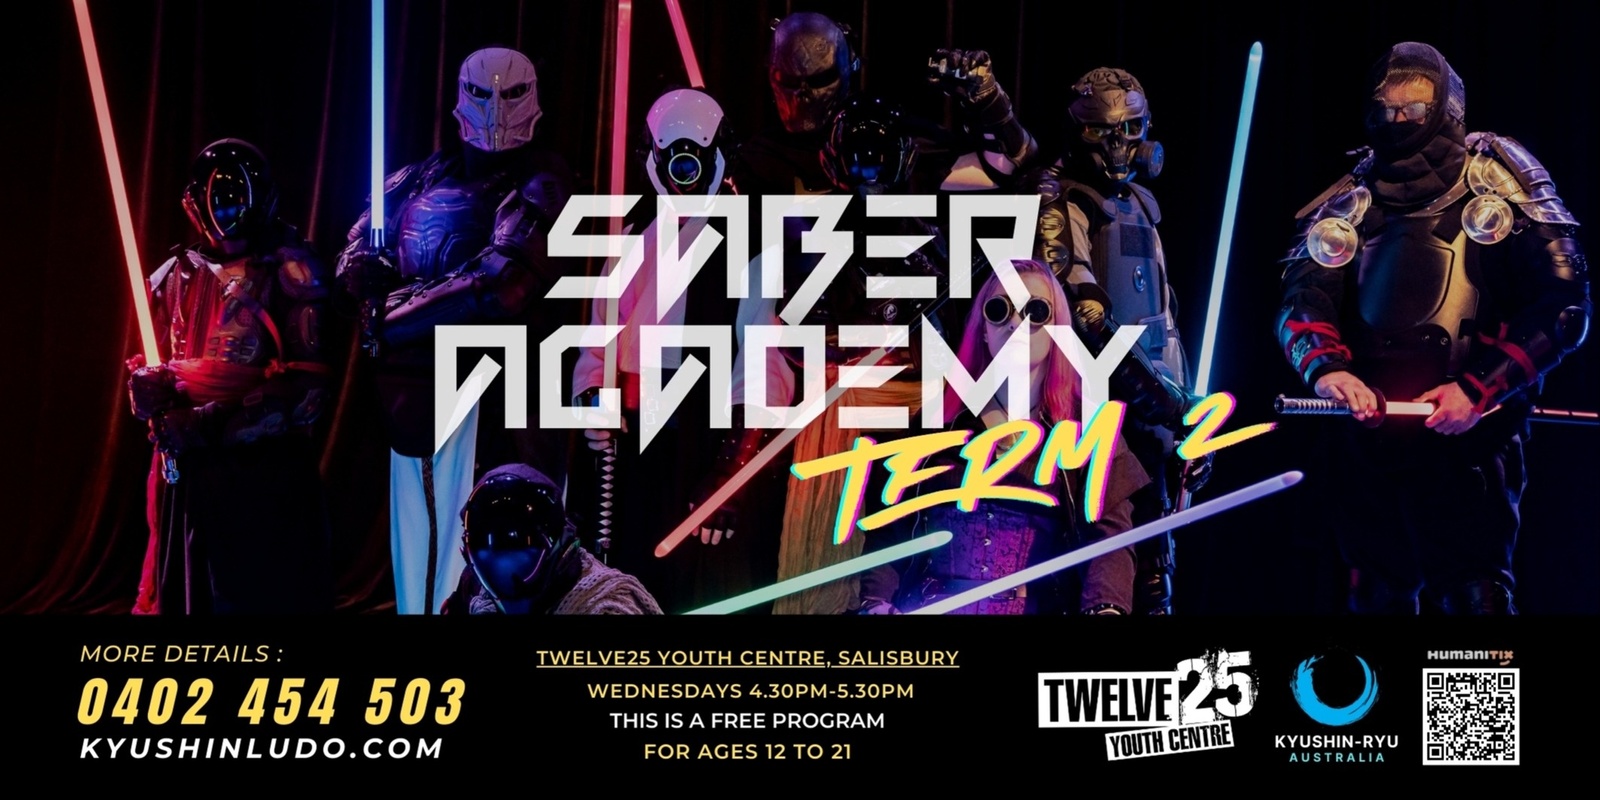 Banner image for Saber Academy - Twelve25 Youth Program